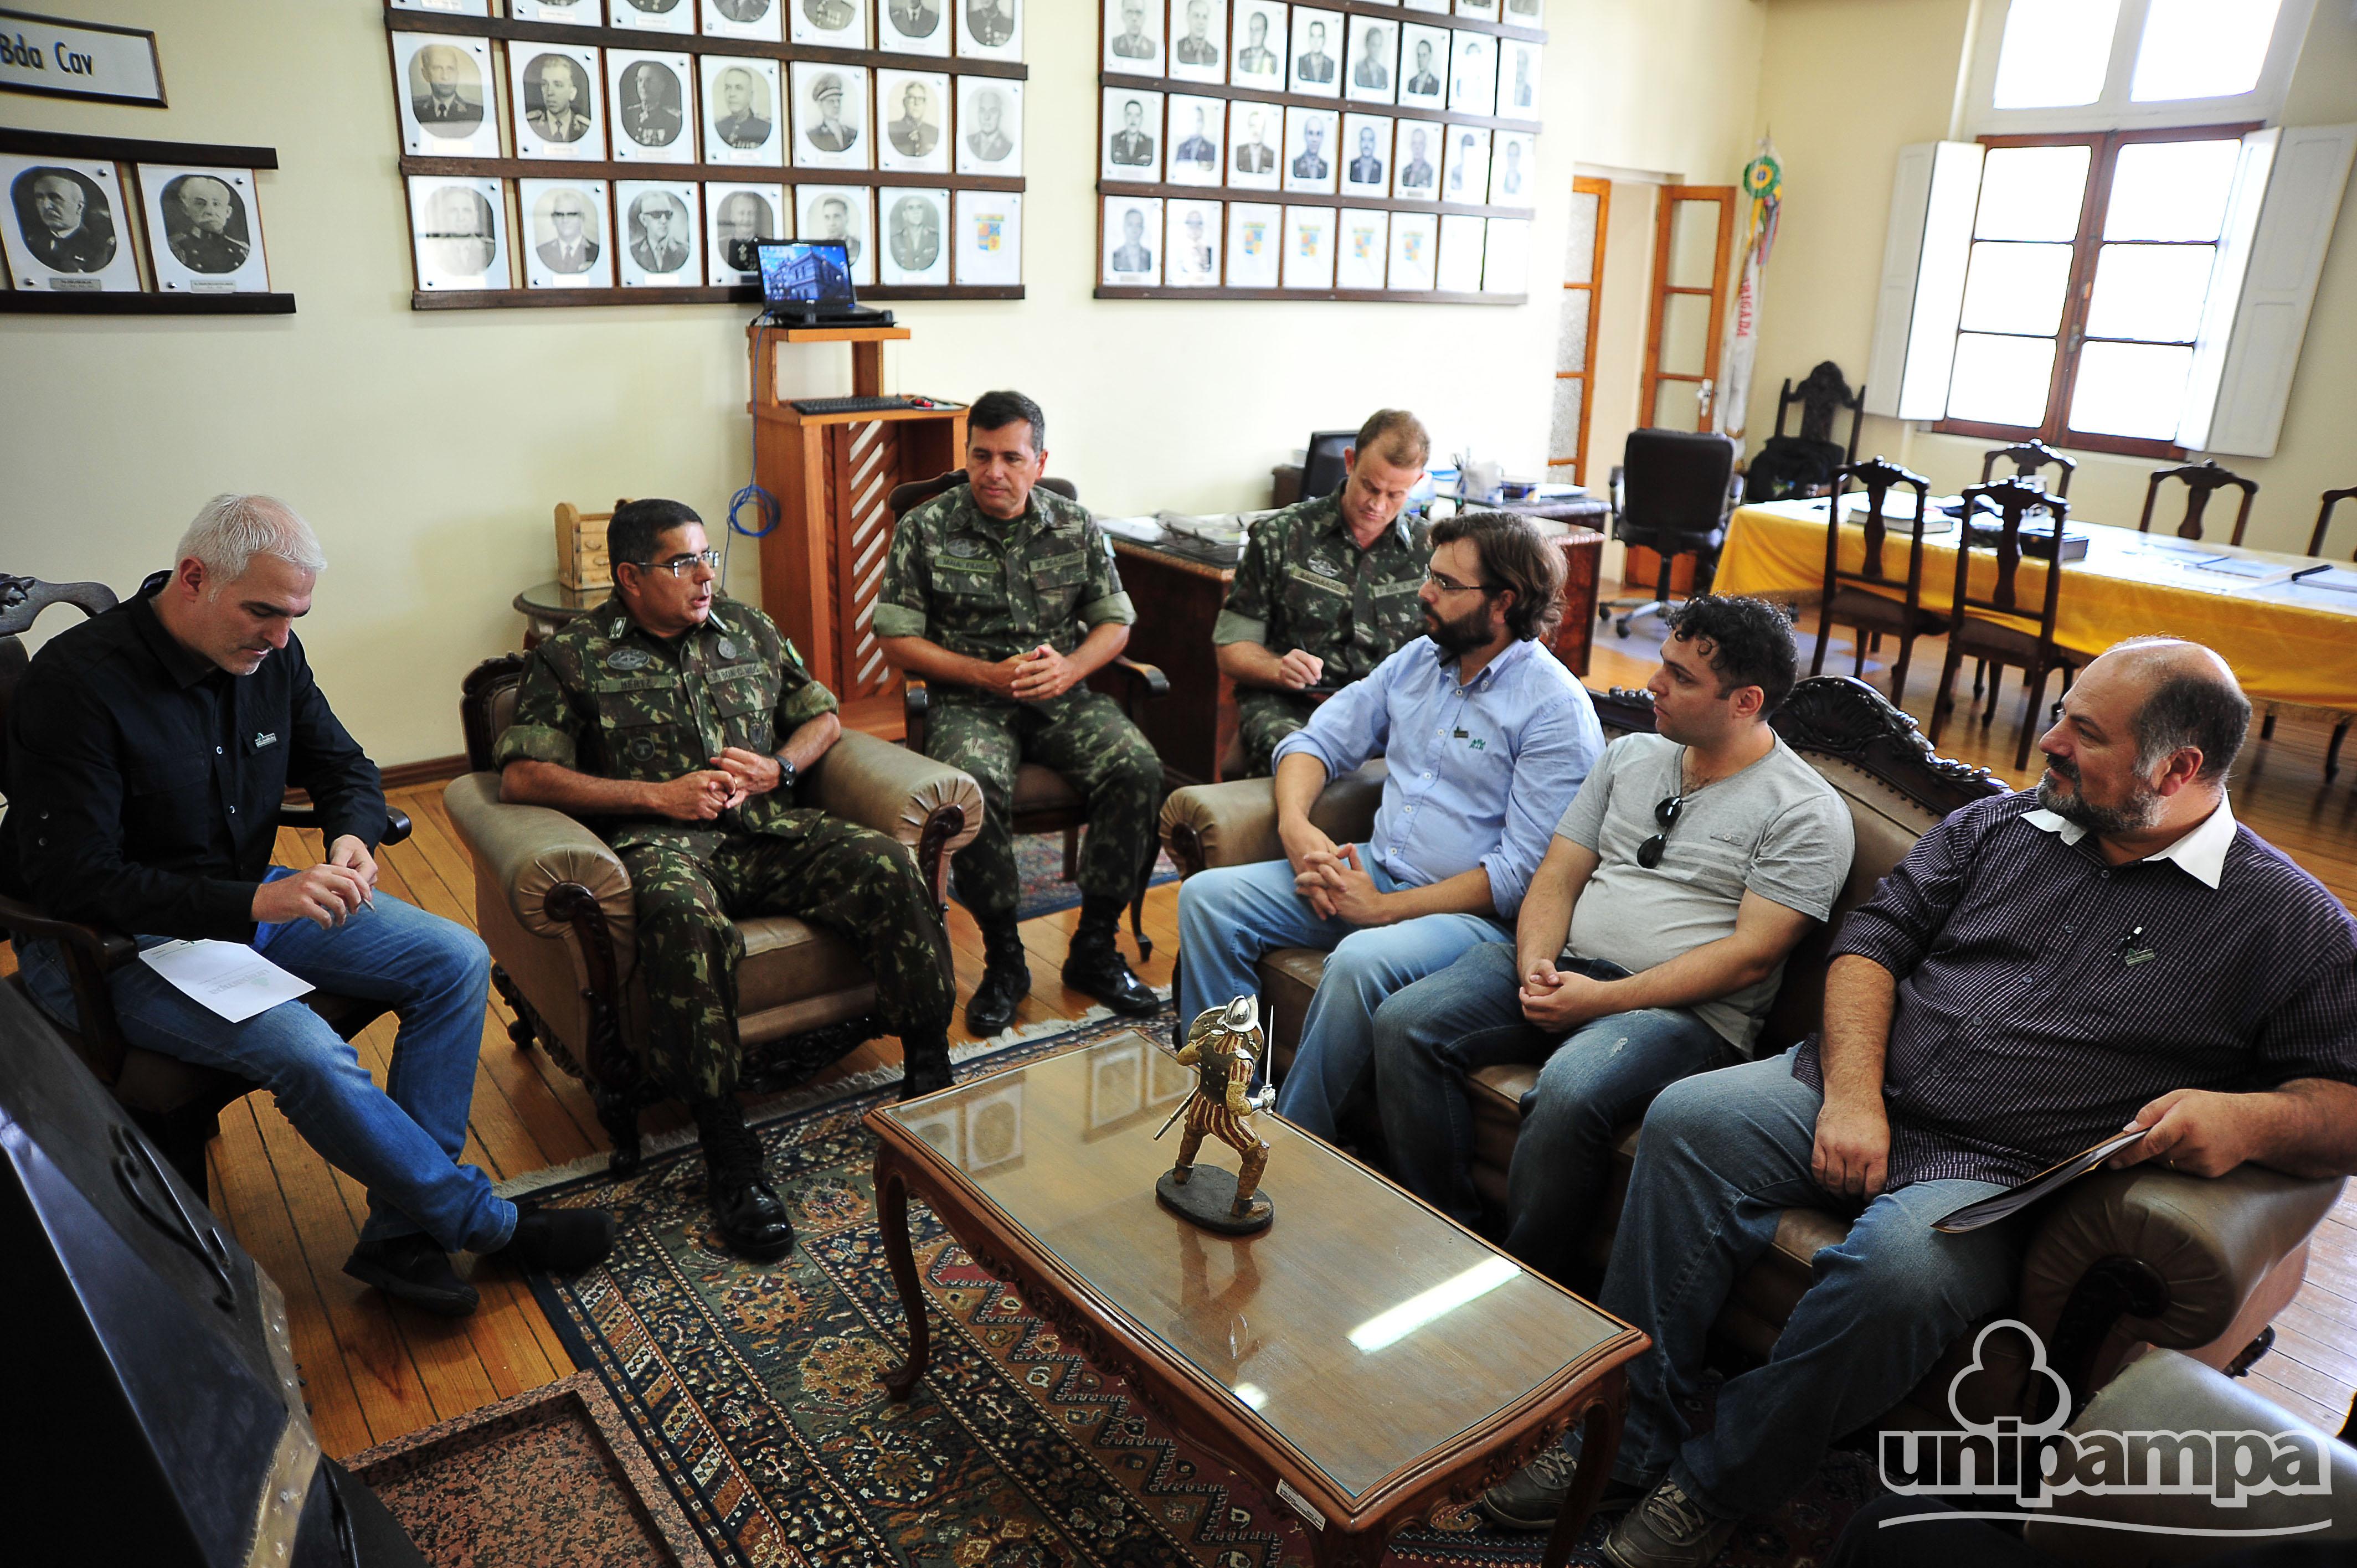 Servidores da Unipampa e do exército reunidos em uma sala do Quartel General